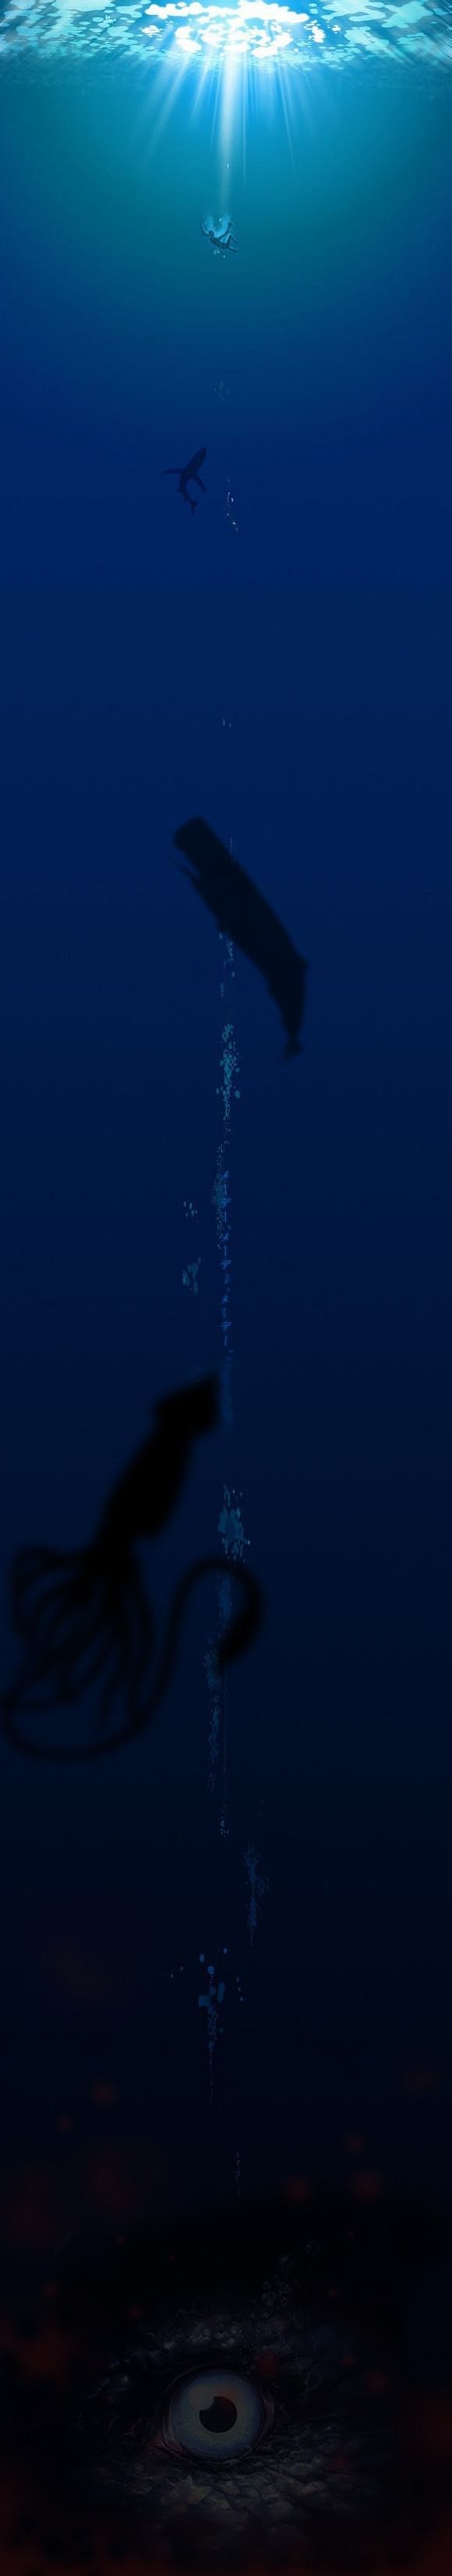 深海恐惧症 终极测试图片